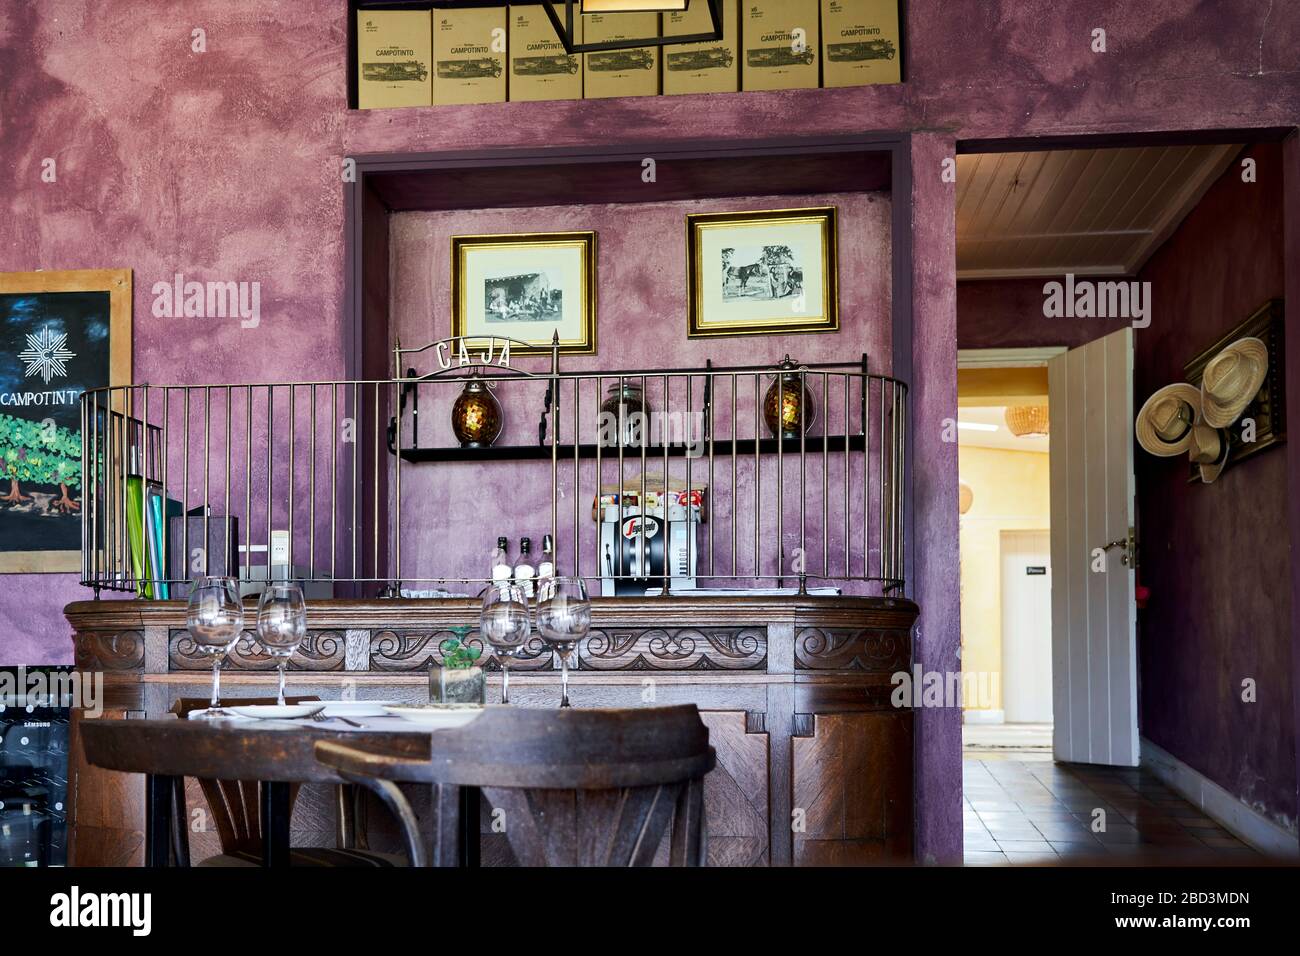 Restaurant interior at Campotinto winery Carmelo, Uruguay. Stock Photo